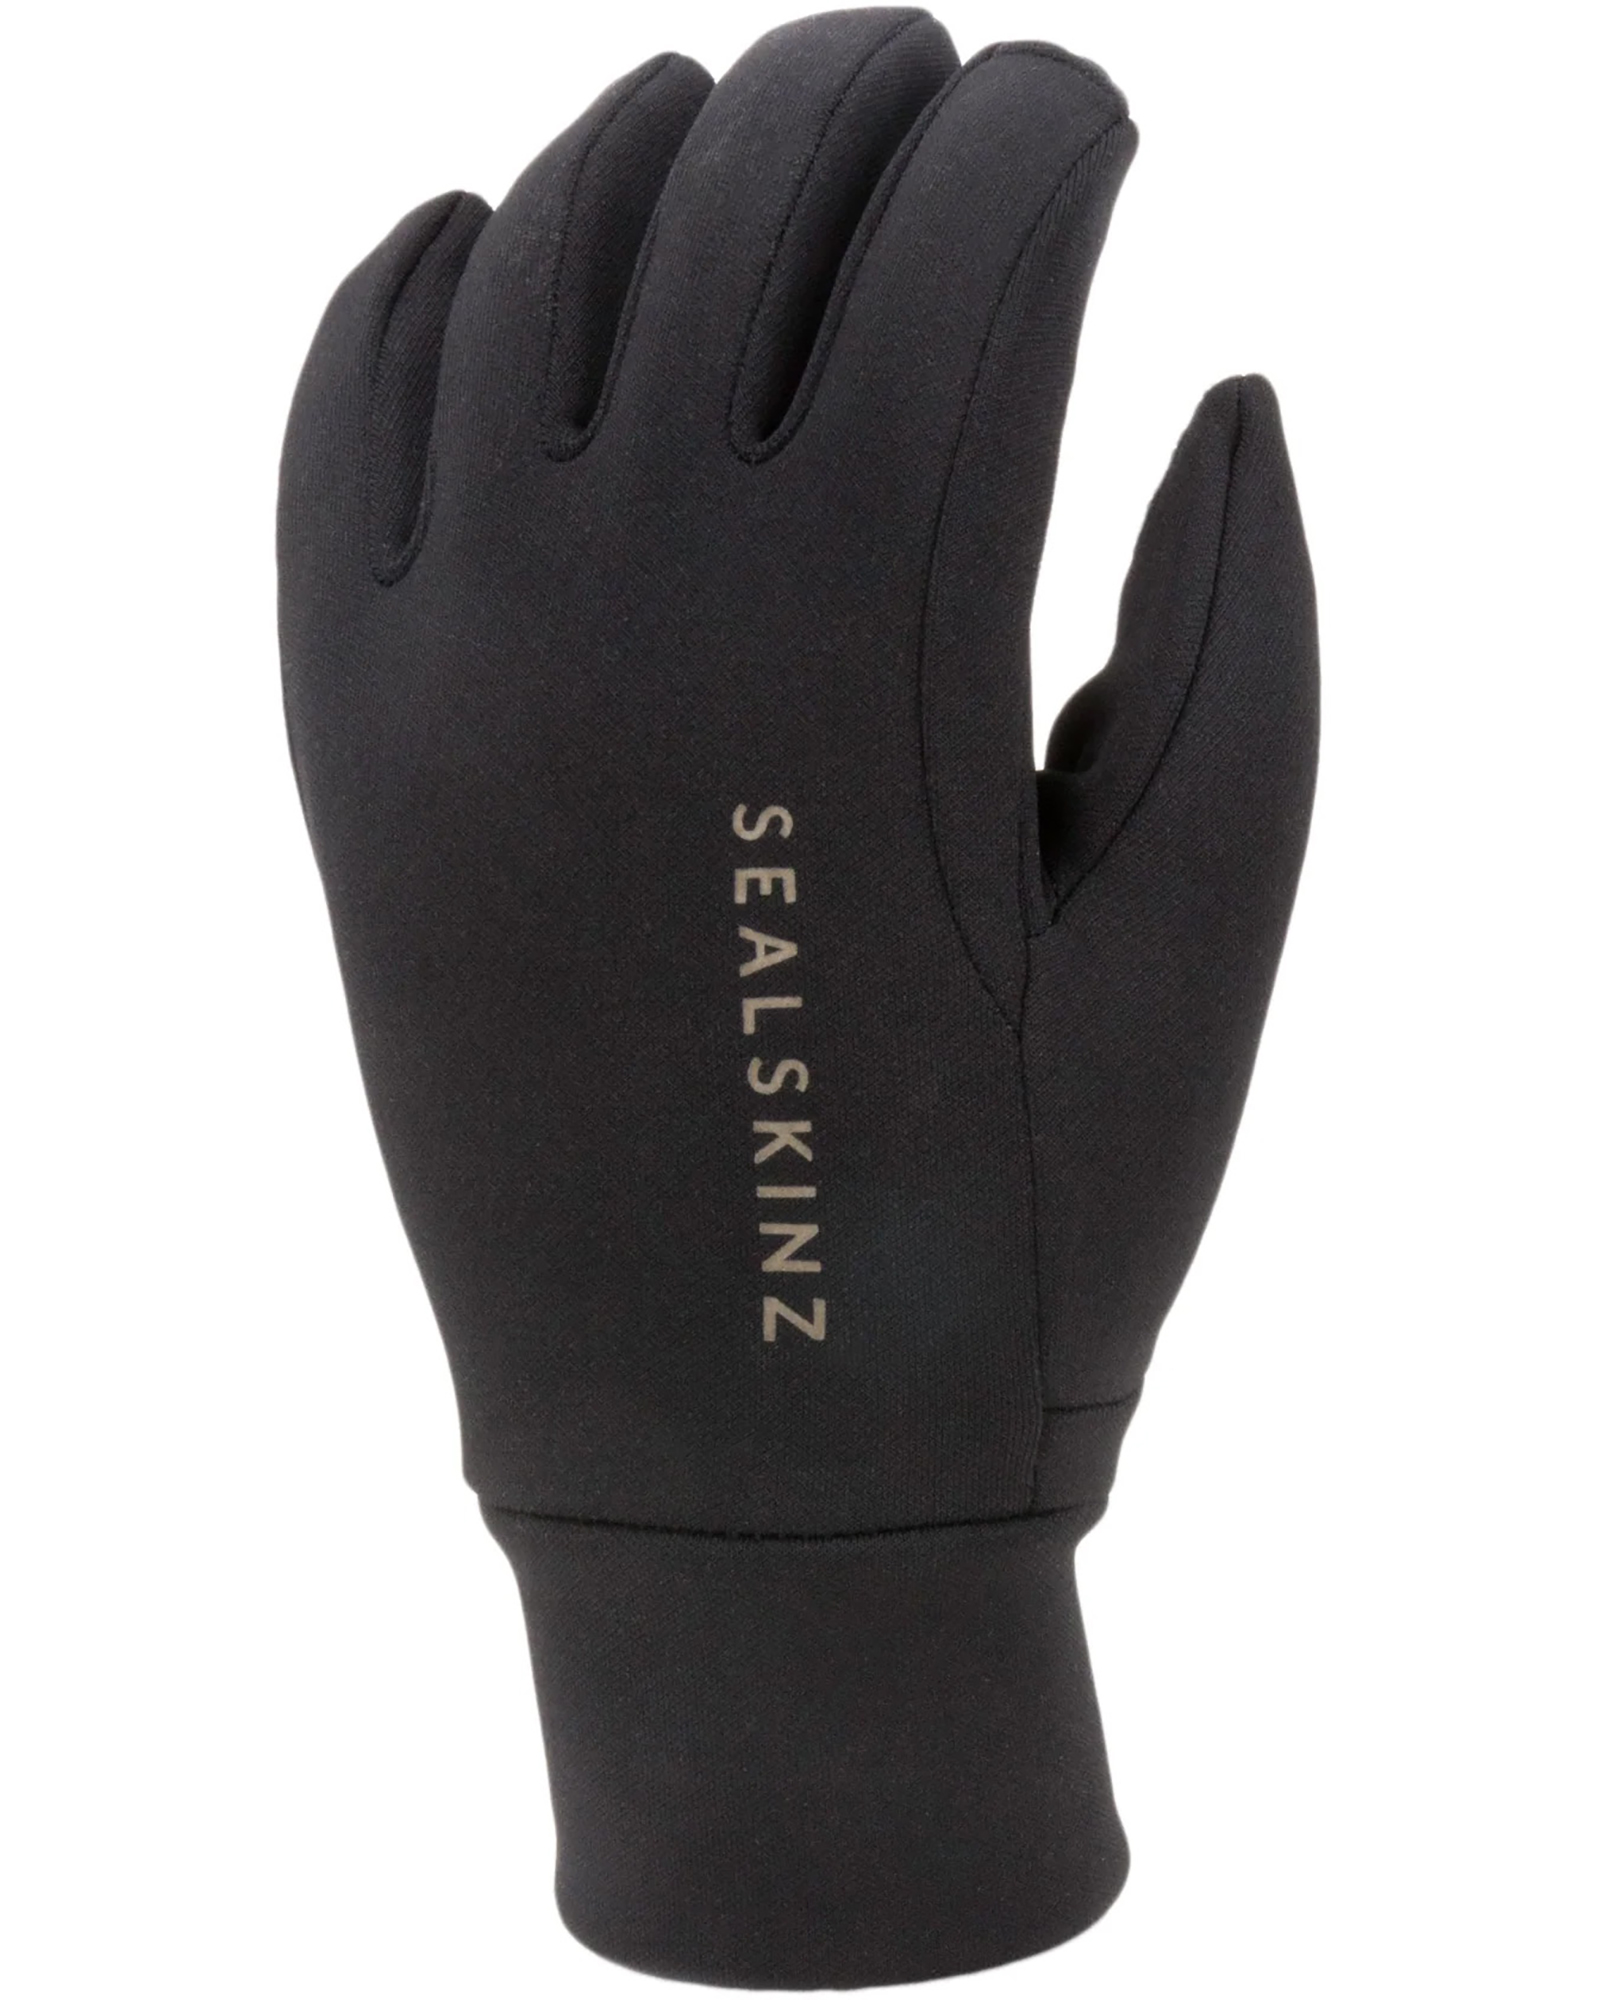 Sealskinz Tasburgh Gloves - black M